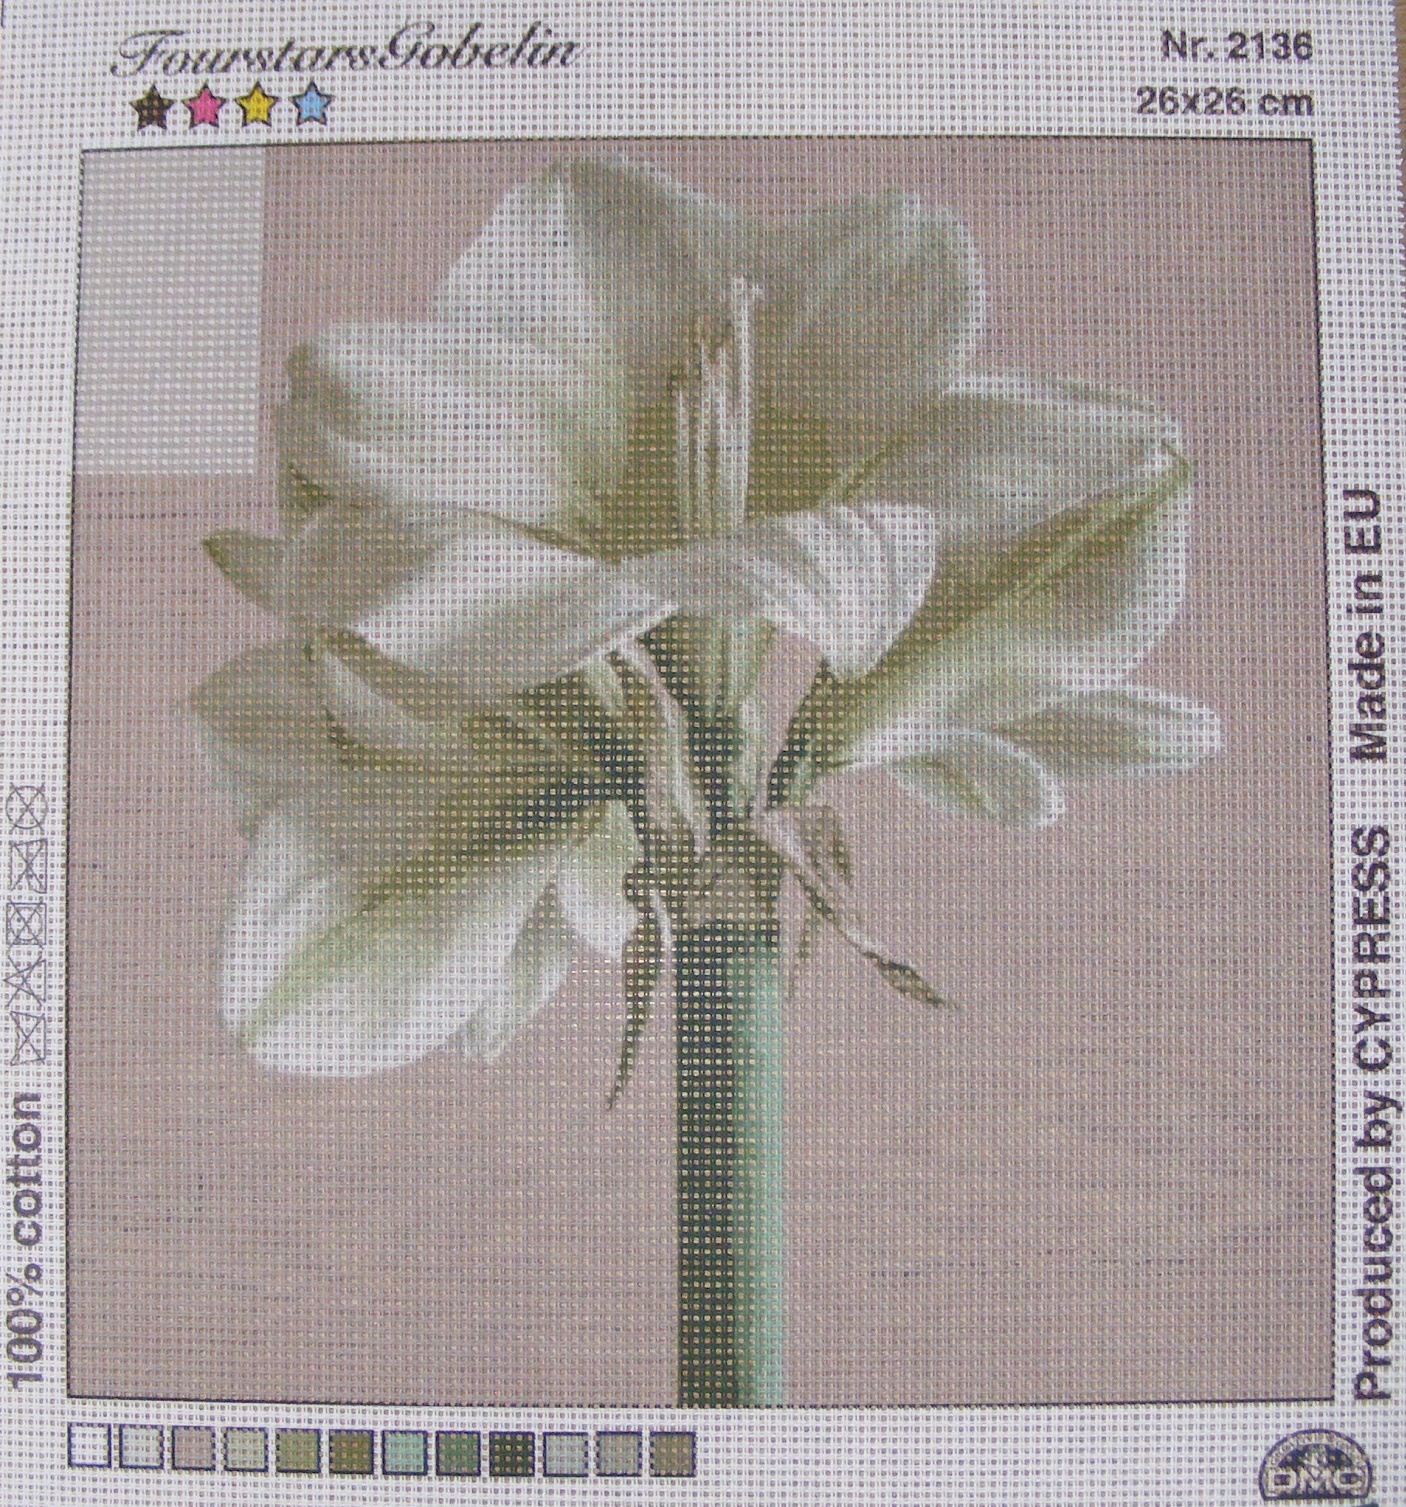 Gobelin 26x26 cm - Virág 2136